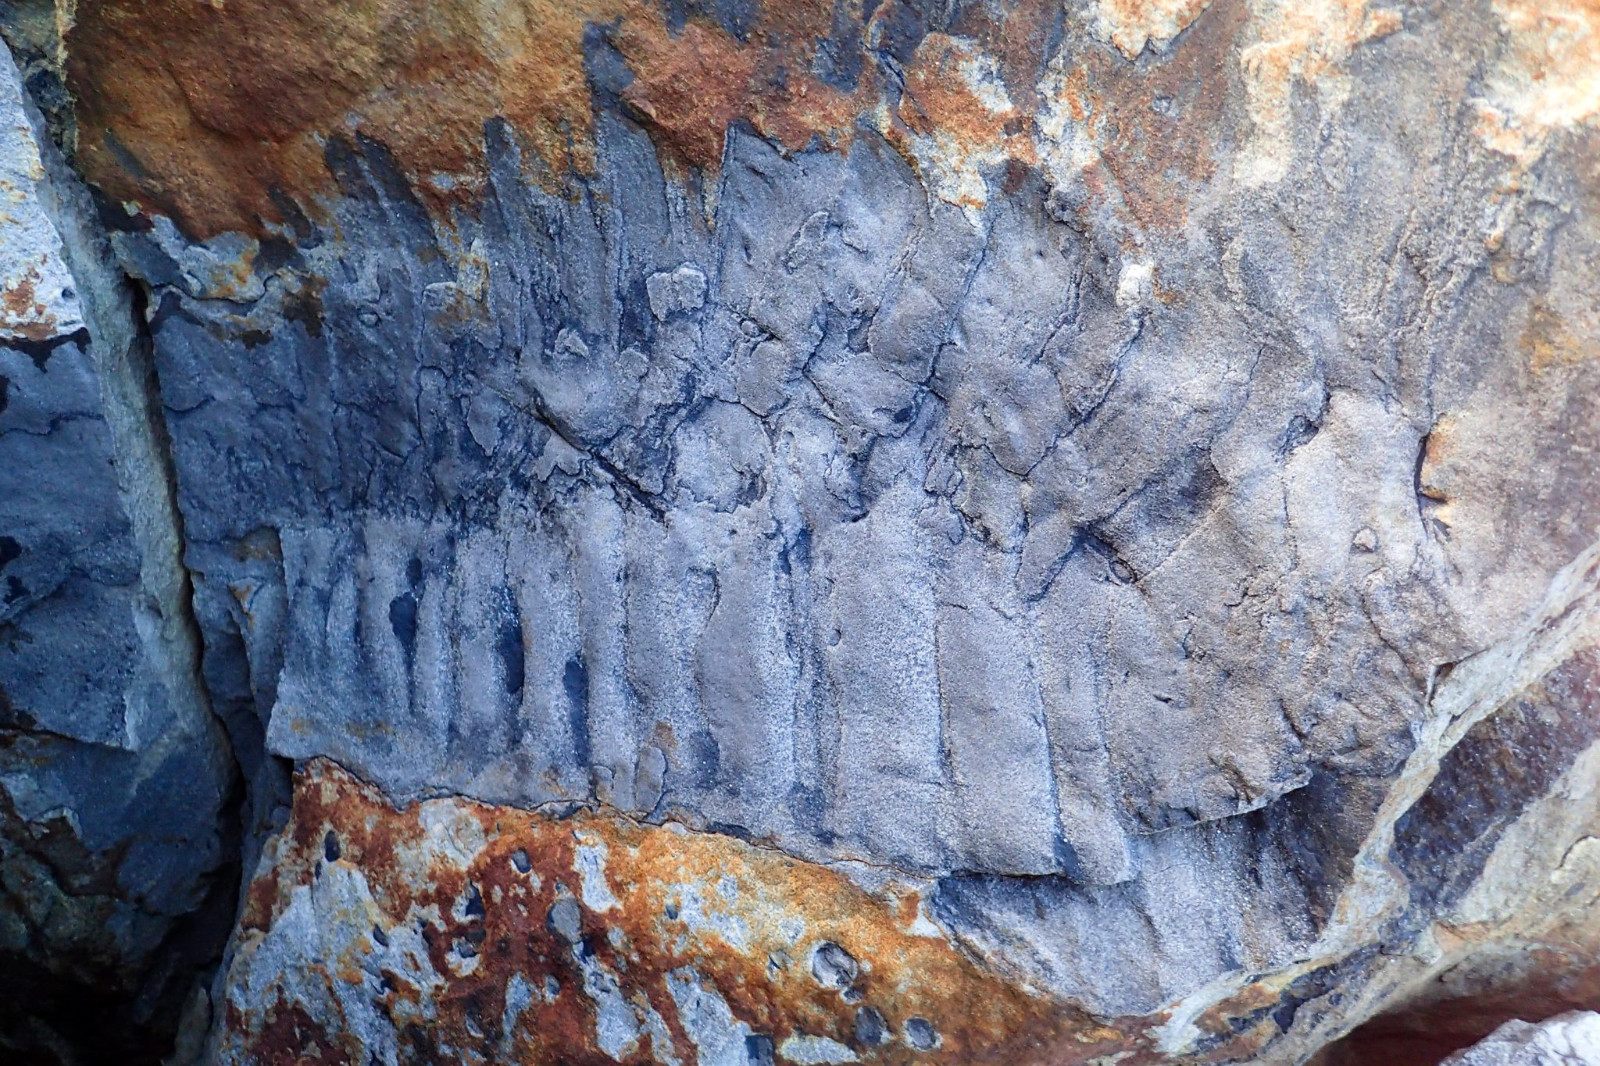 英国英格兰海滩发现有史以来最大的巨型千足虫化石 生活在石炭纪时期有2.7米长